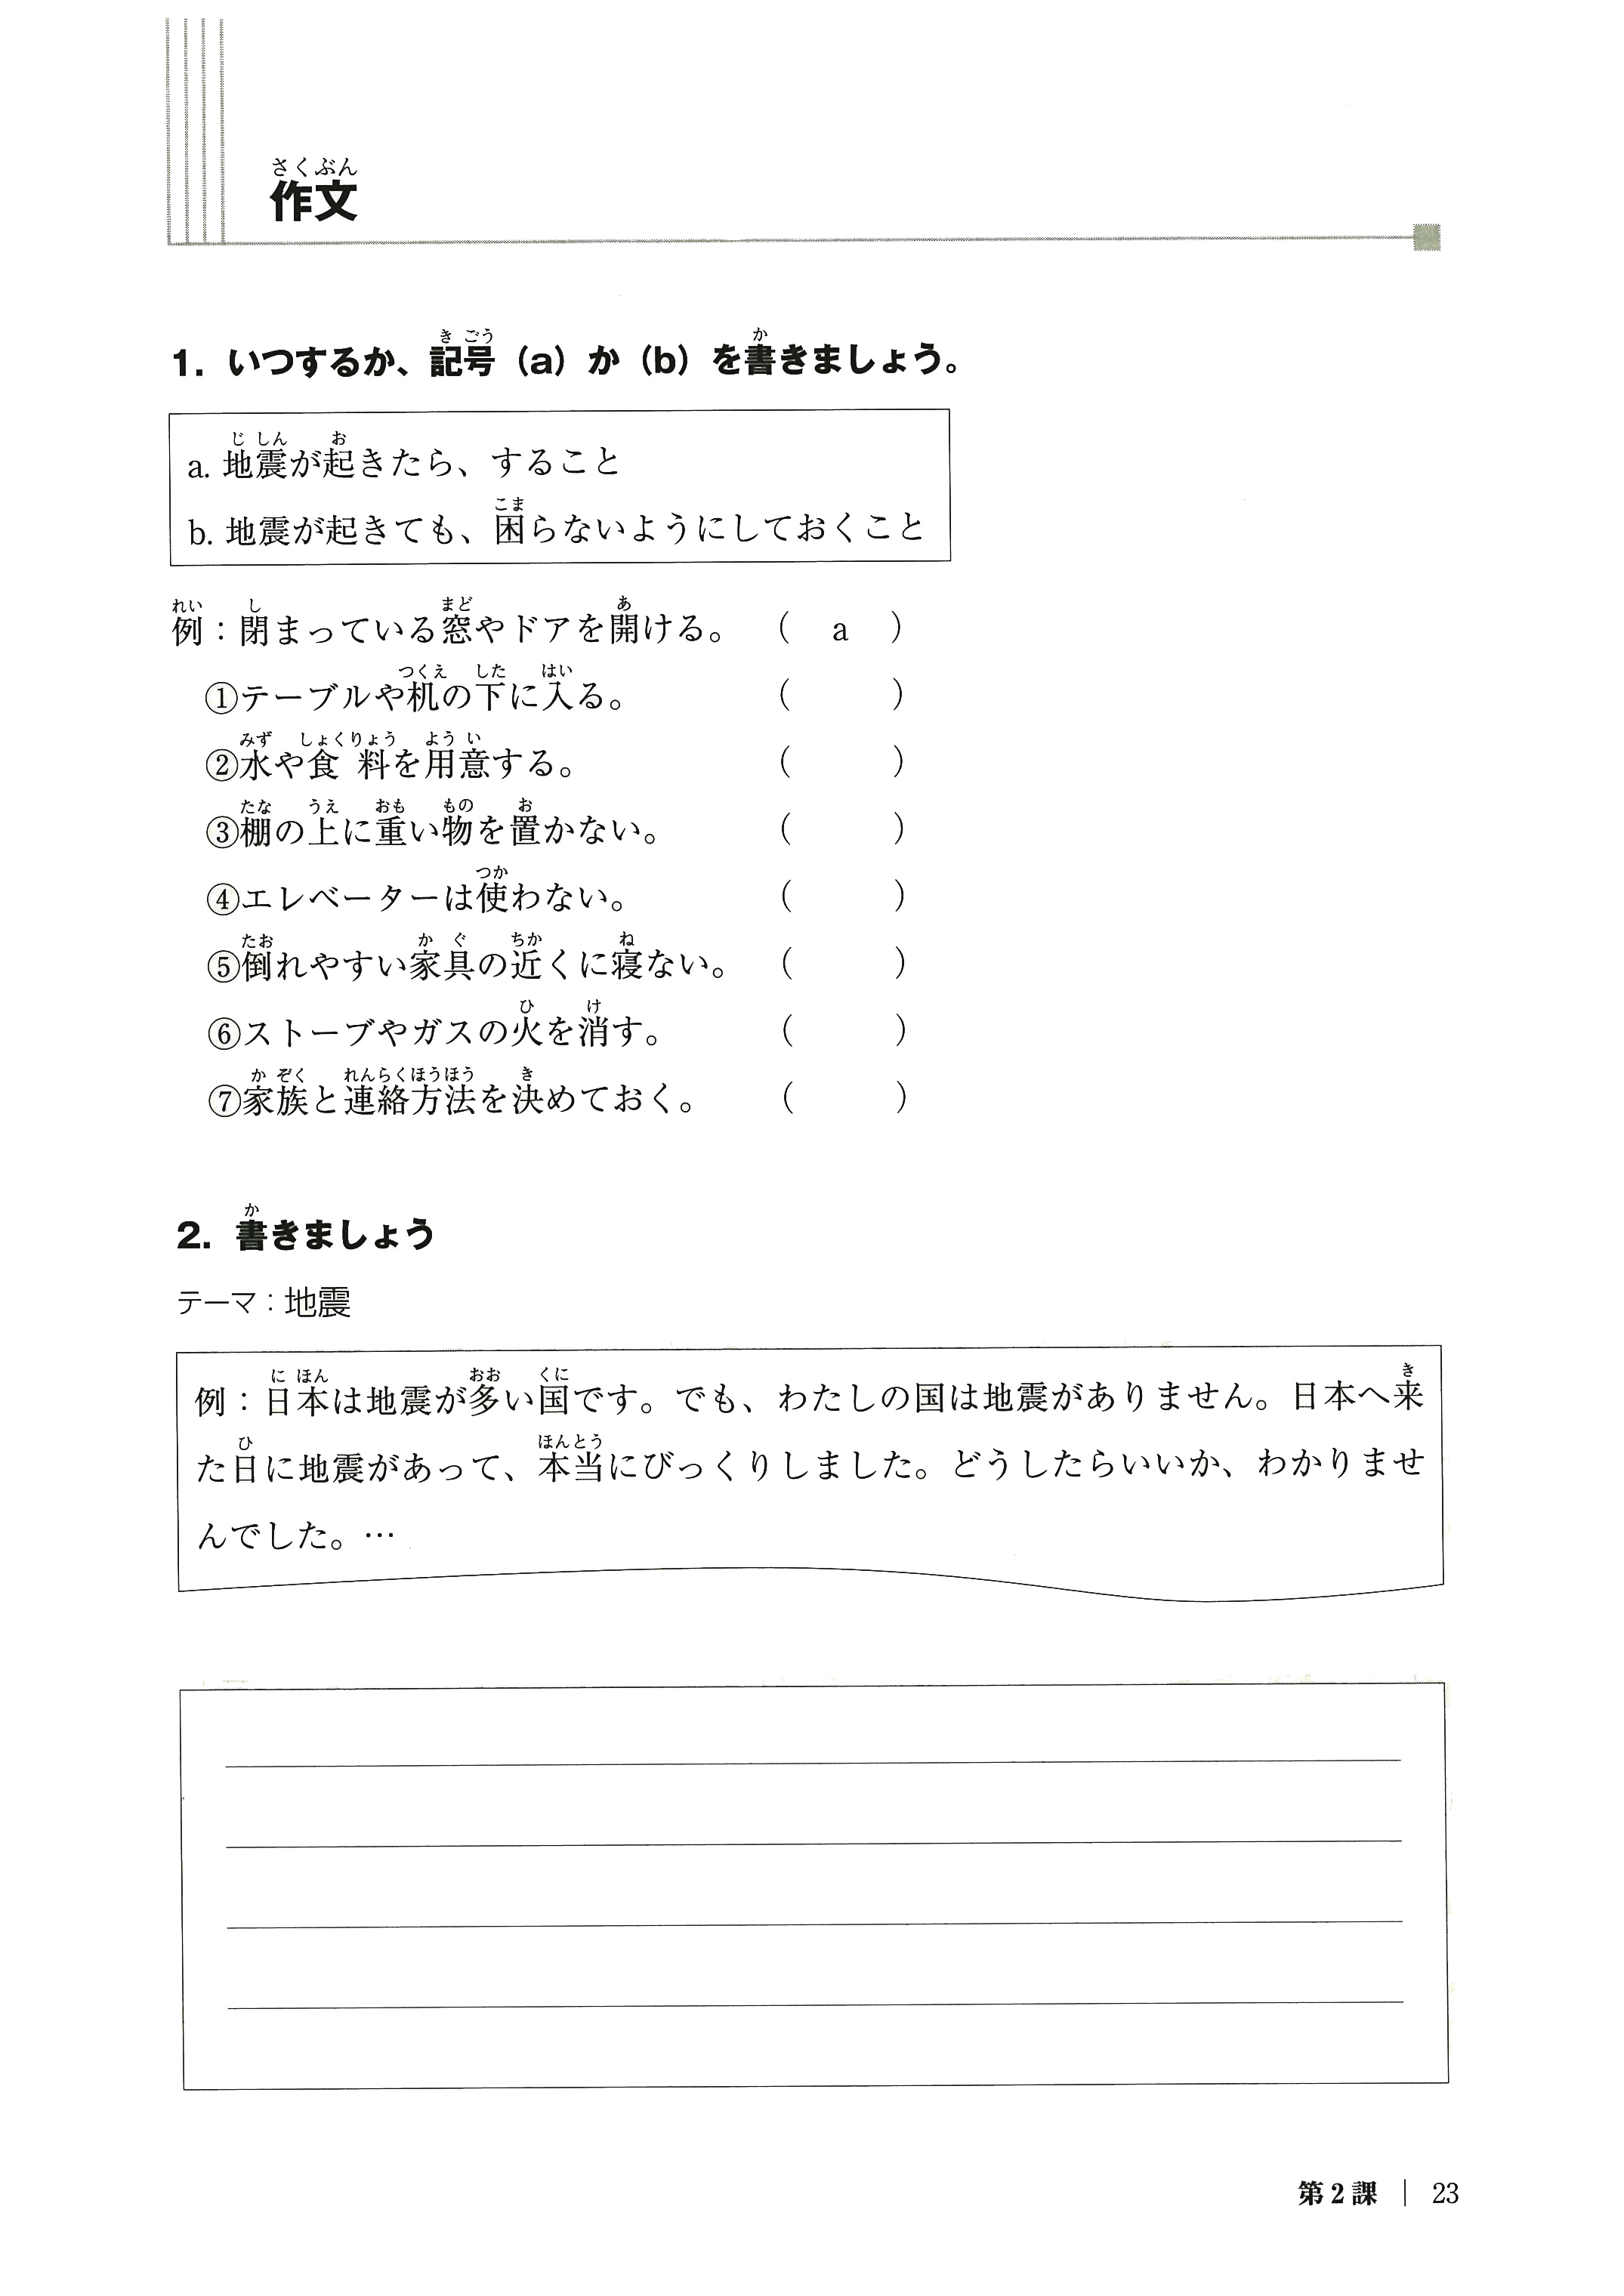 特別連載 日本語教科書活用講座26 中級へ行こう 日本語の文型と表現５９ を使った授業 私の授業 作文が苦手 書けない学習者への初中級の作文指導 中級へ行こう 日本語の文型と表現５９ を使って スリーエーネットワーク